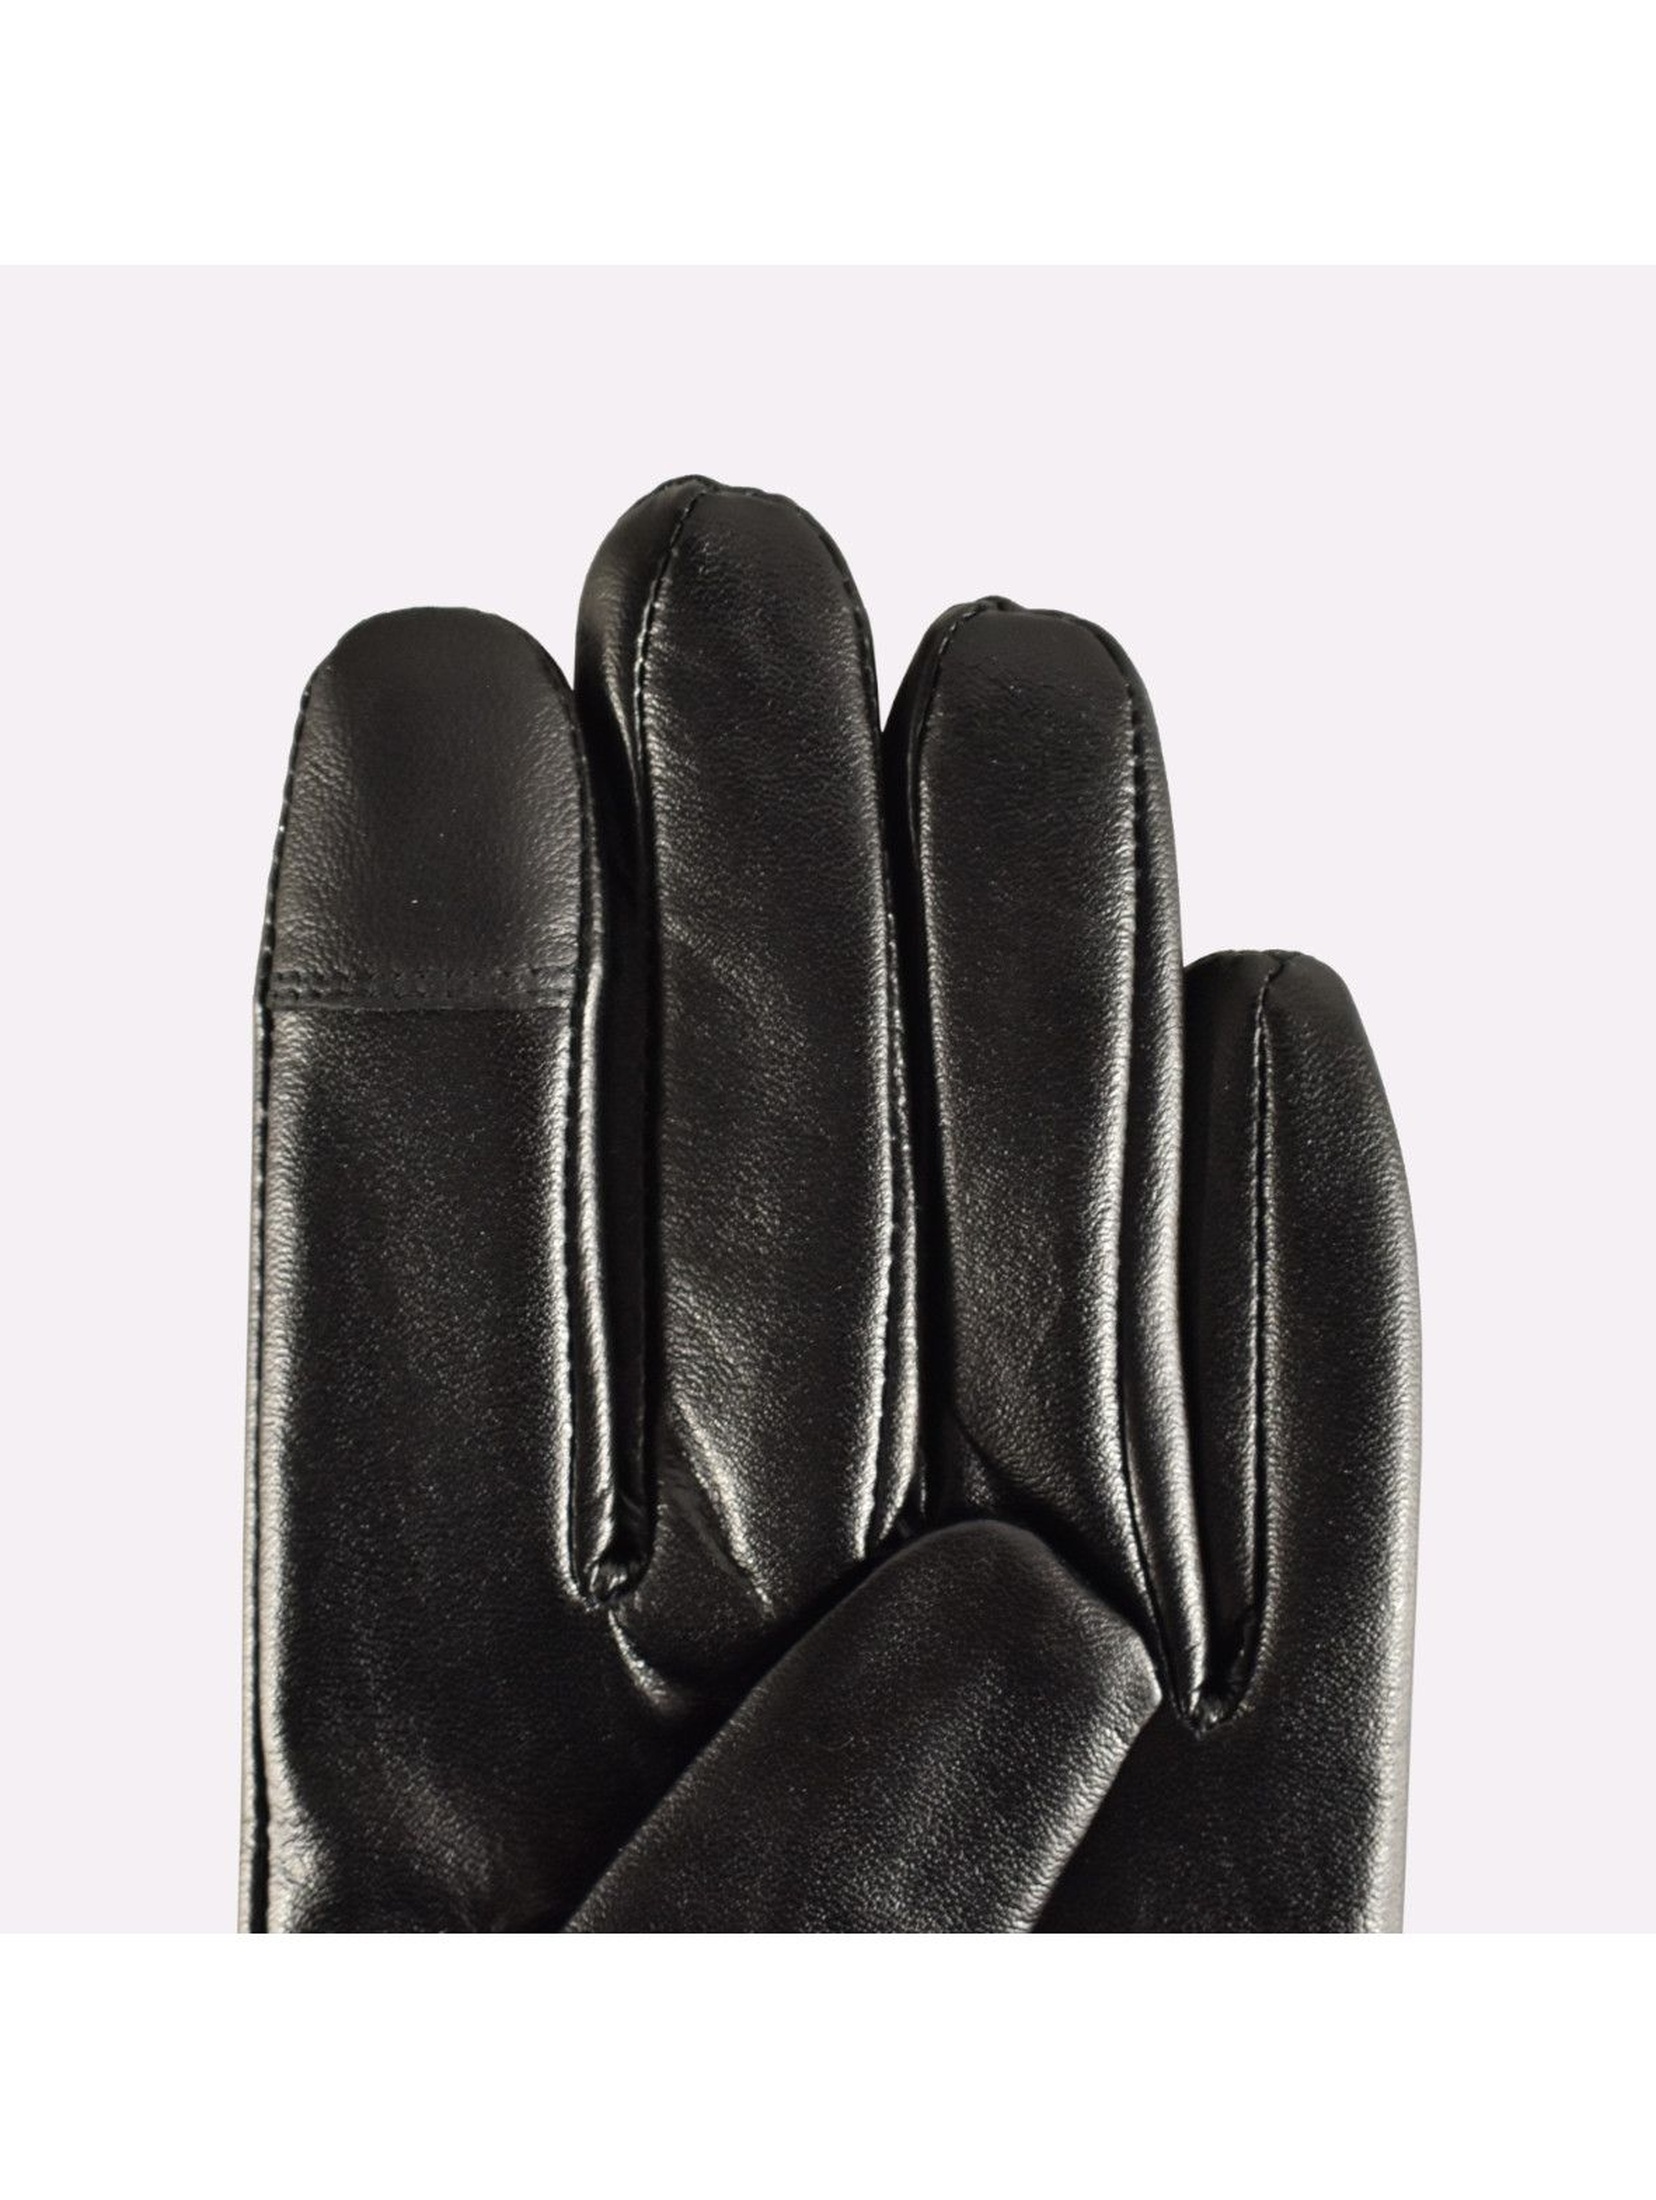 Rękawiczki damskie skórzane antybakteryjne - czarne